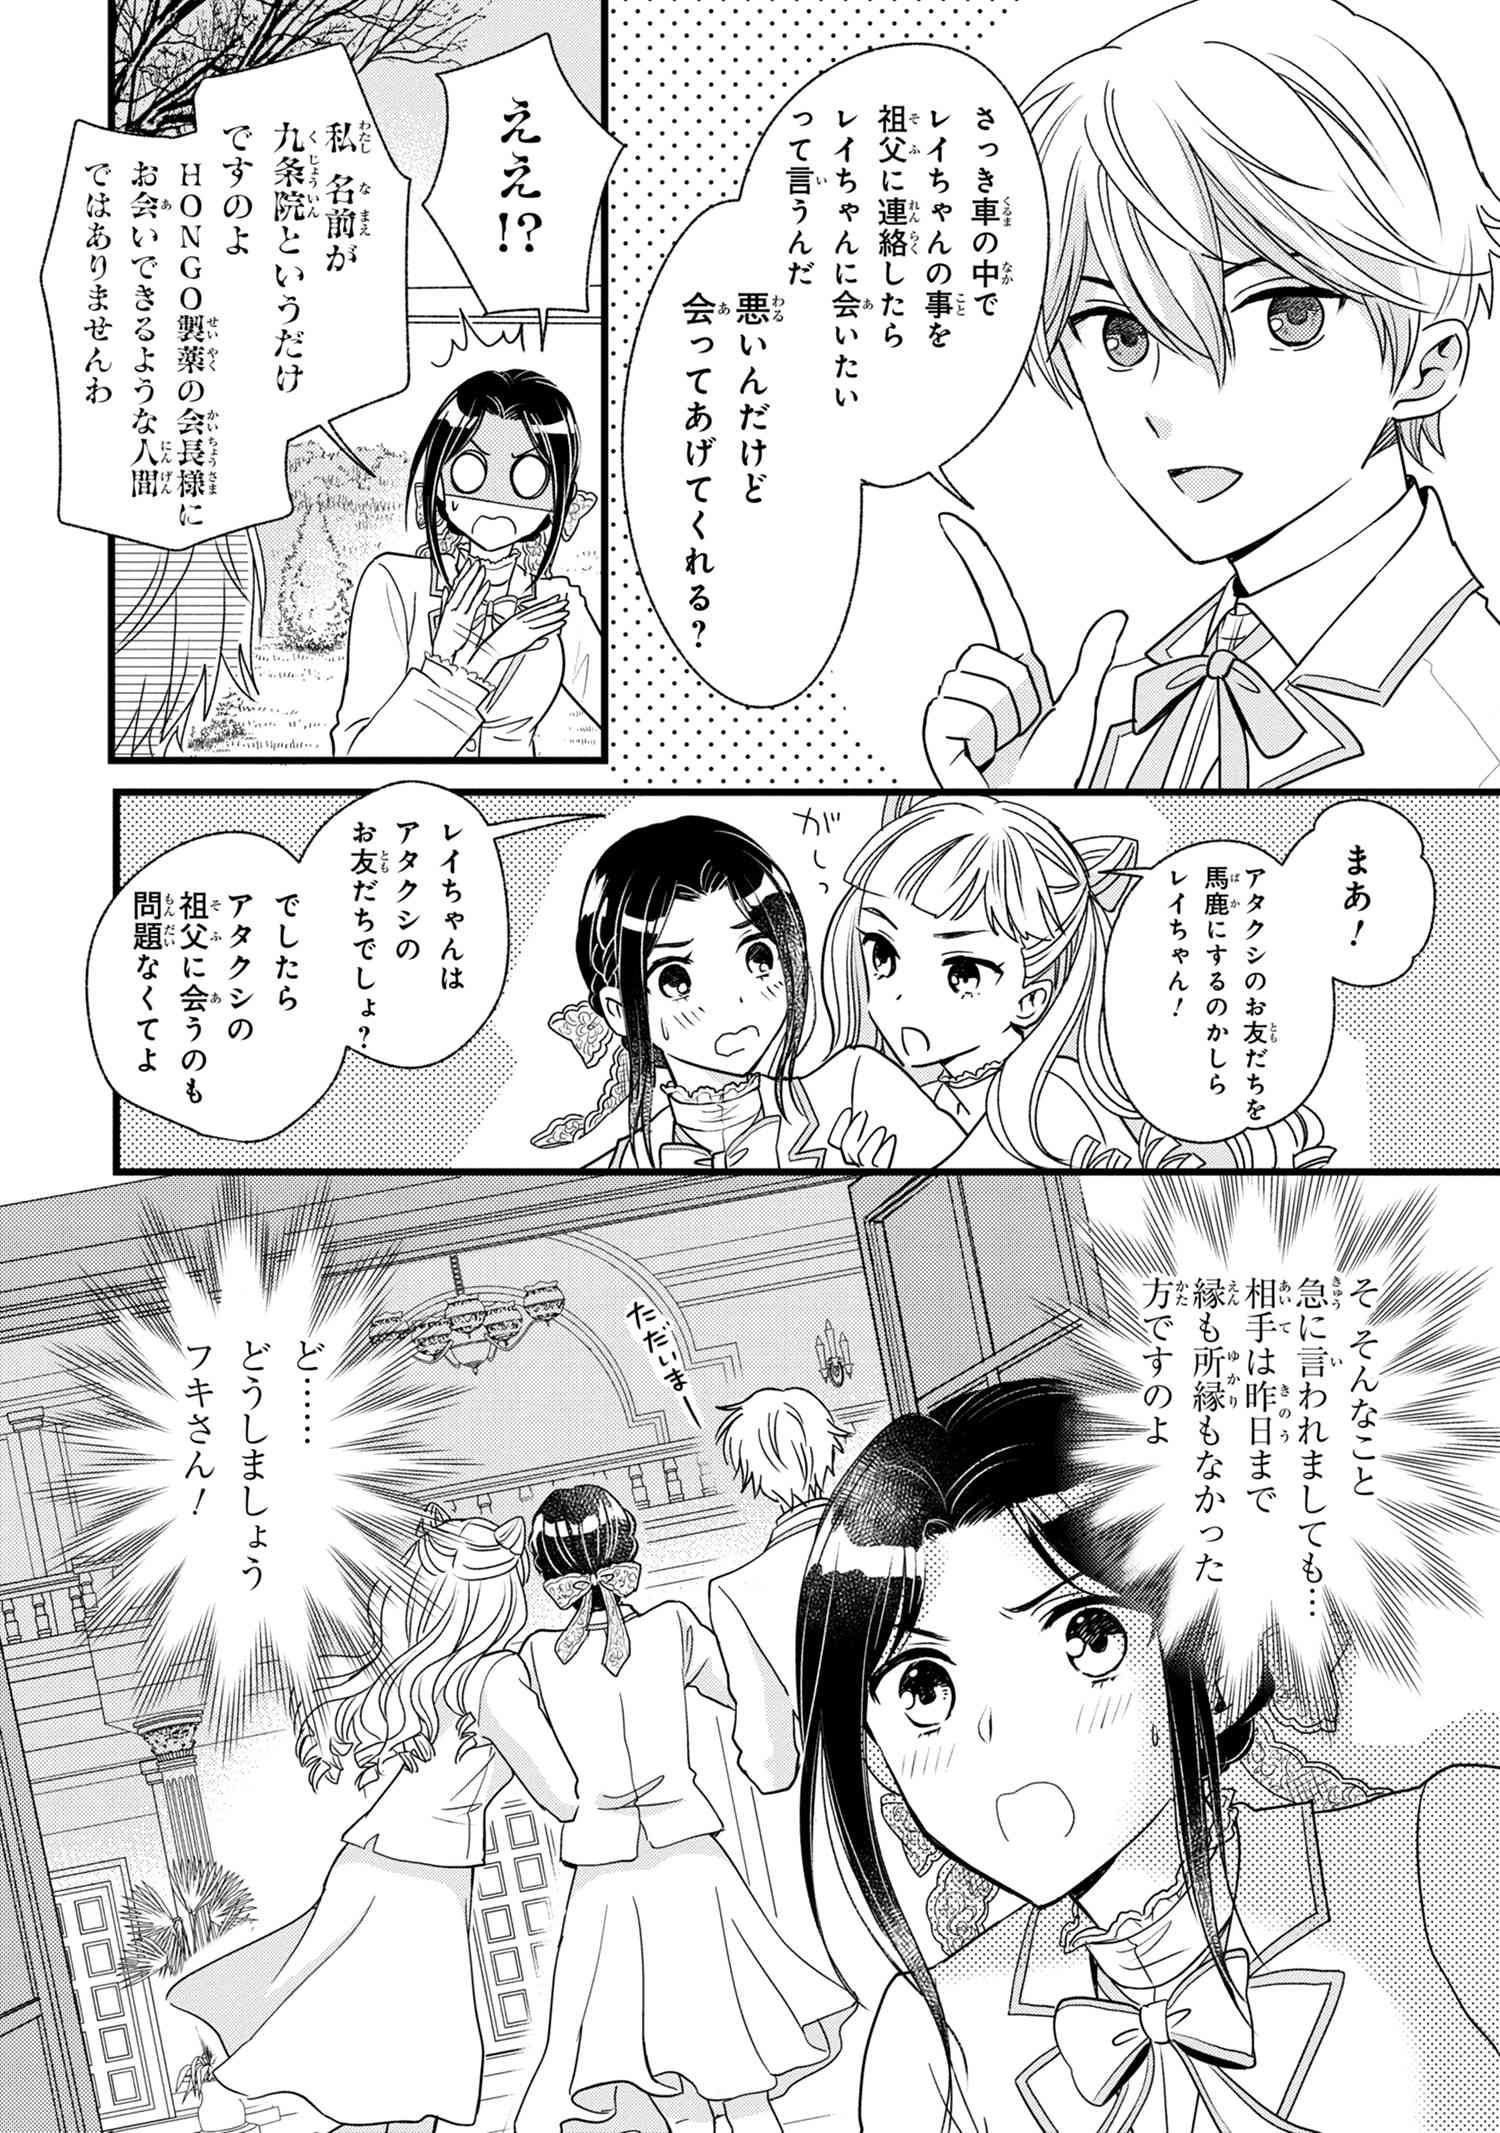 Reiko no Fuugi Akuyaku Reijou to Yobarete imasu ga, tada no Binbou Musume desu - Chapter 3-3 - Page 11